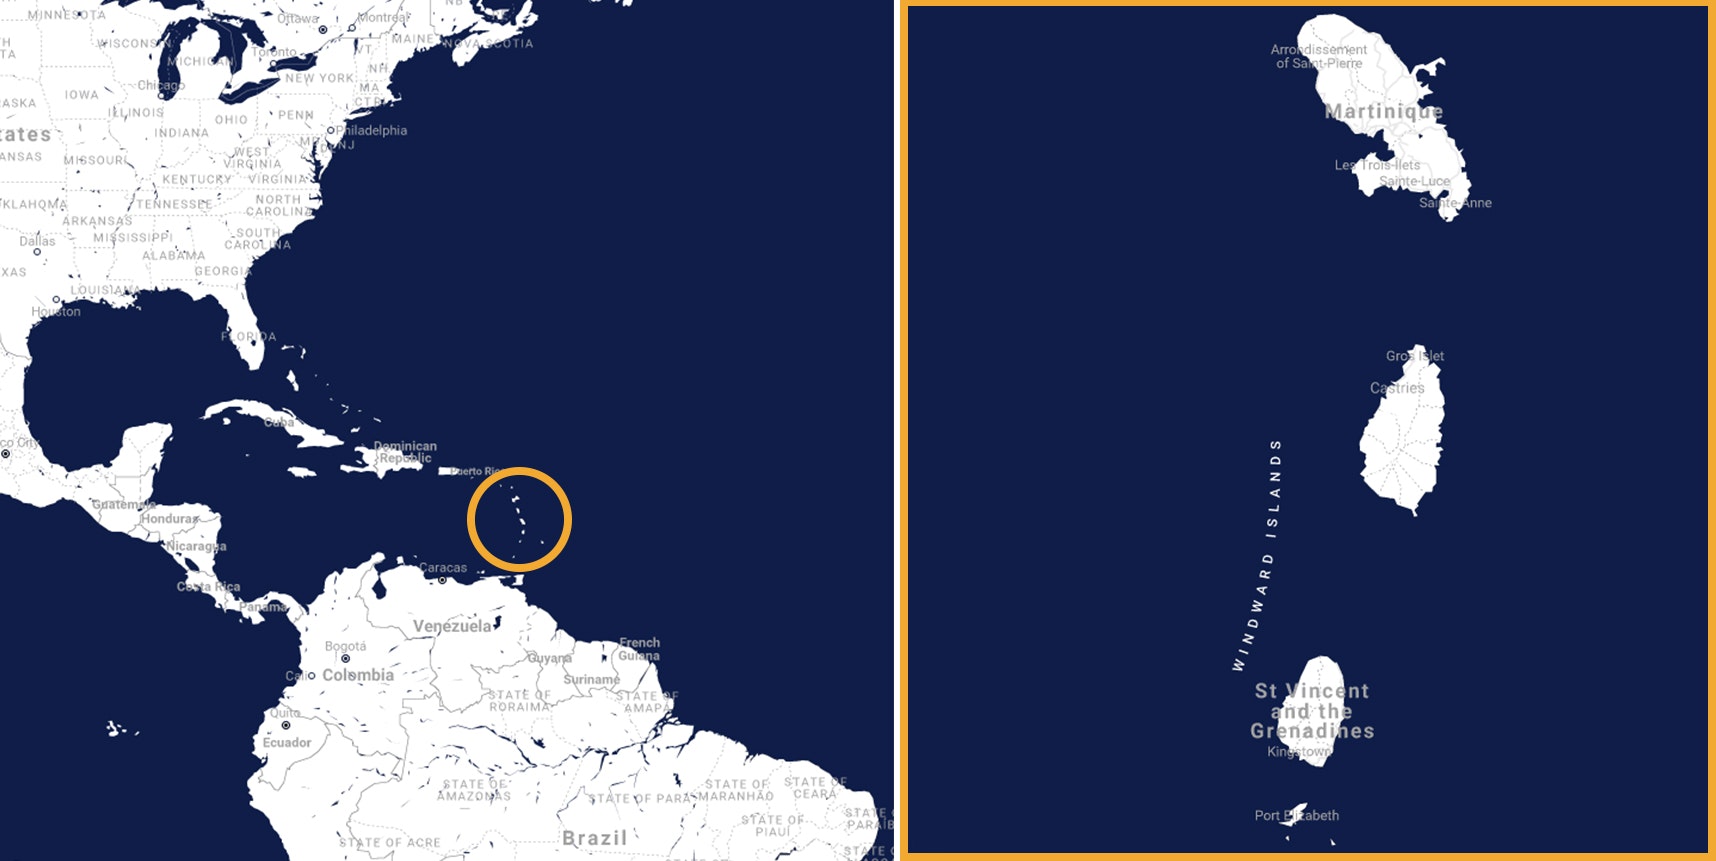 Karte der Karibik und der Inseln Martinik, Sv. Vincenc und die Grenadinen